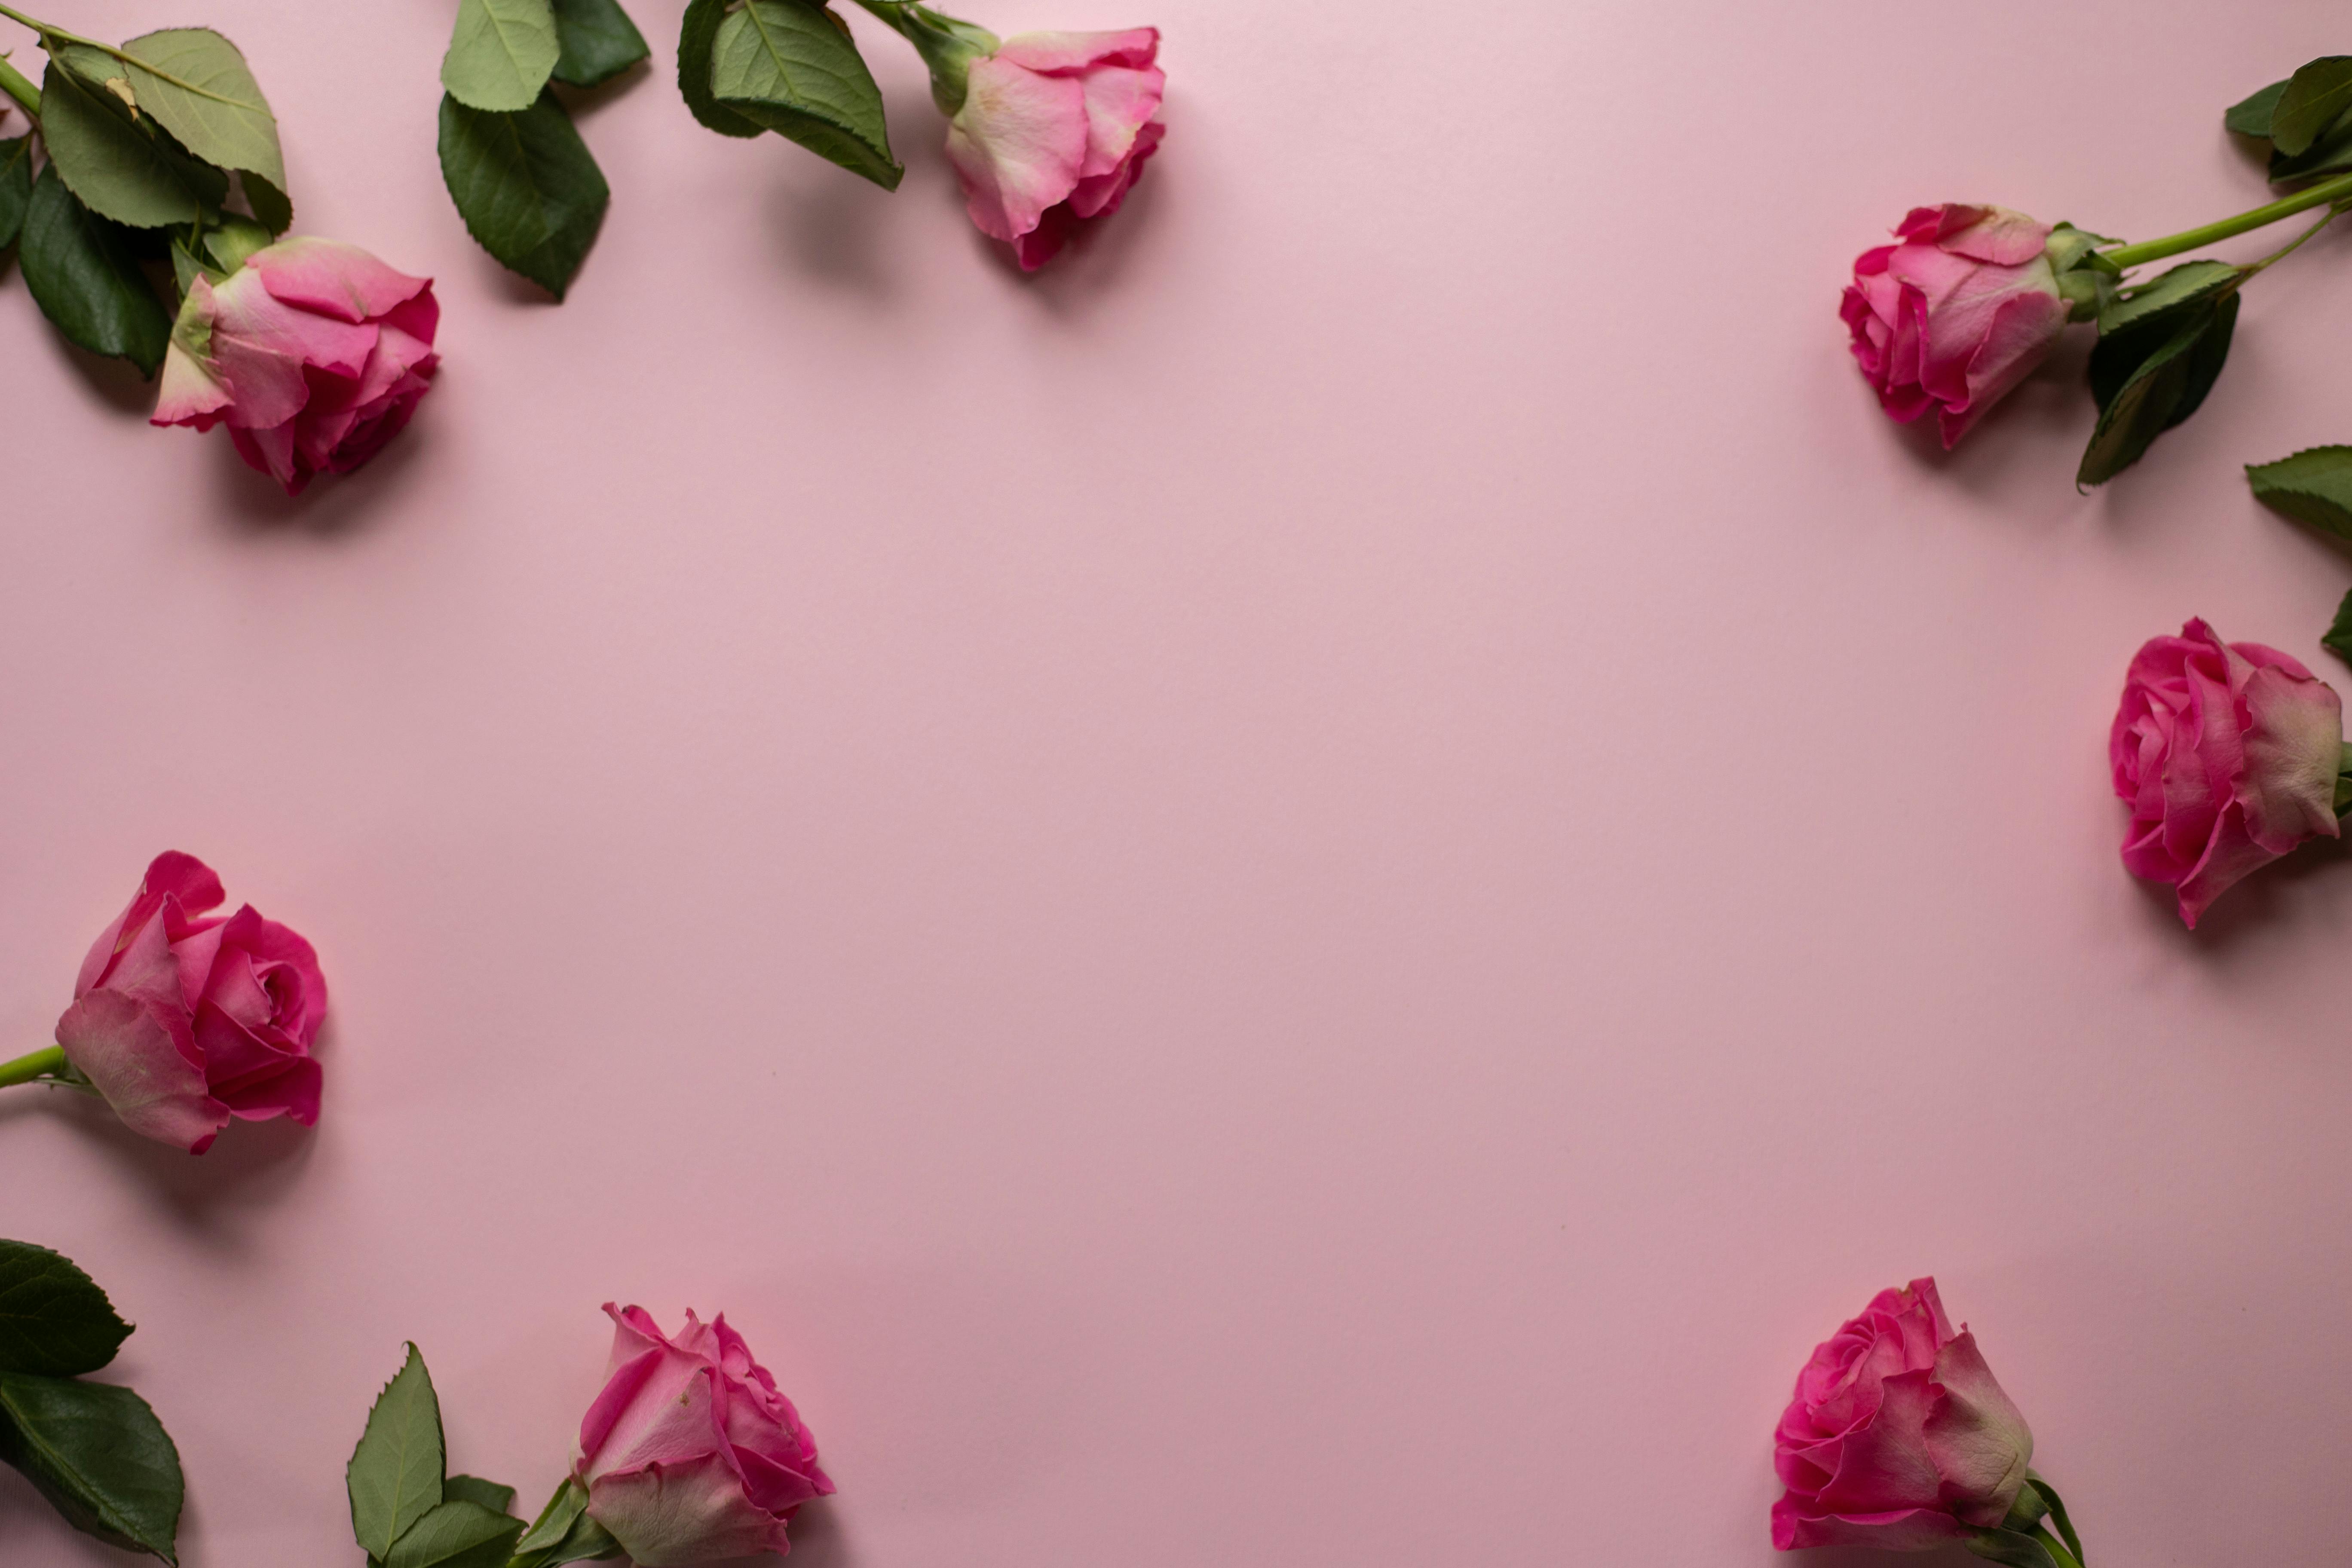 Pale Pink Silk Rose Petals, 300 petals